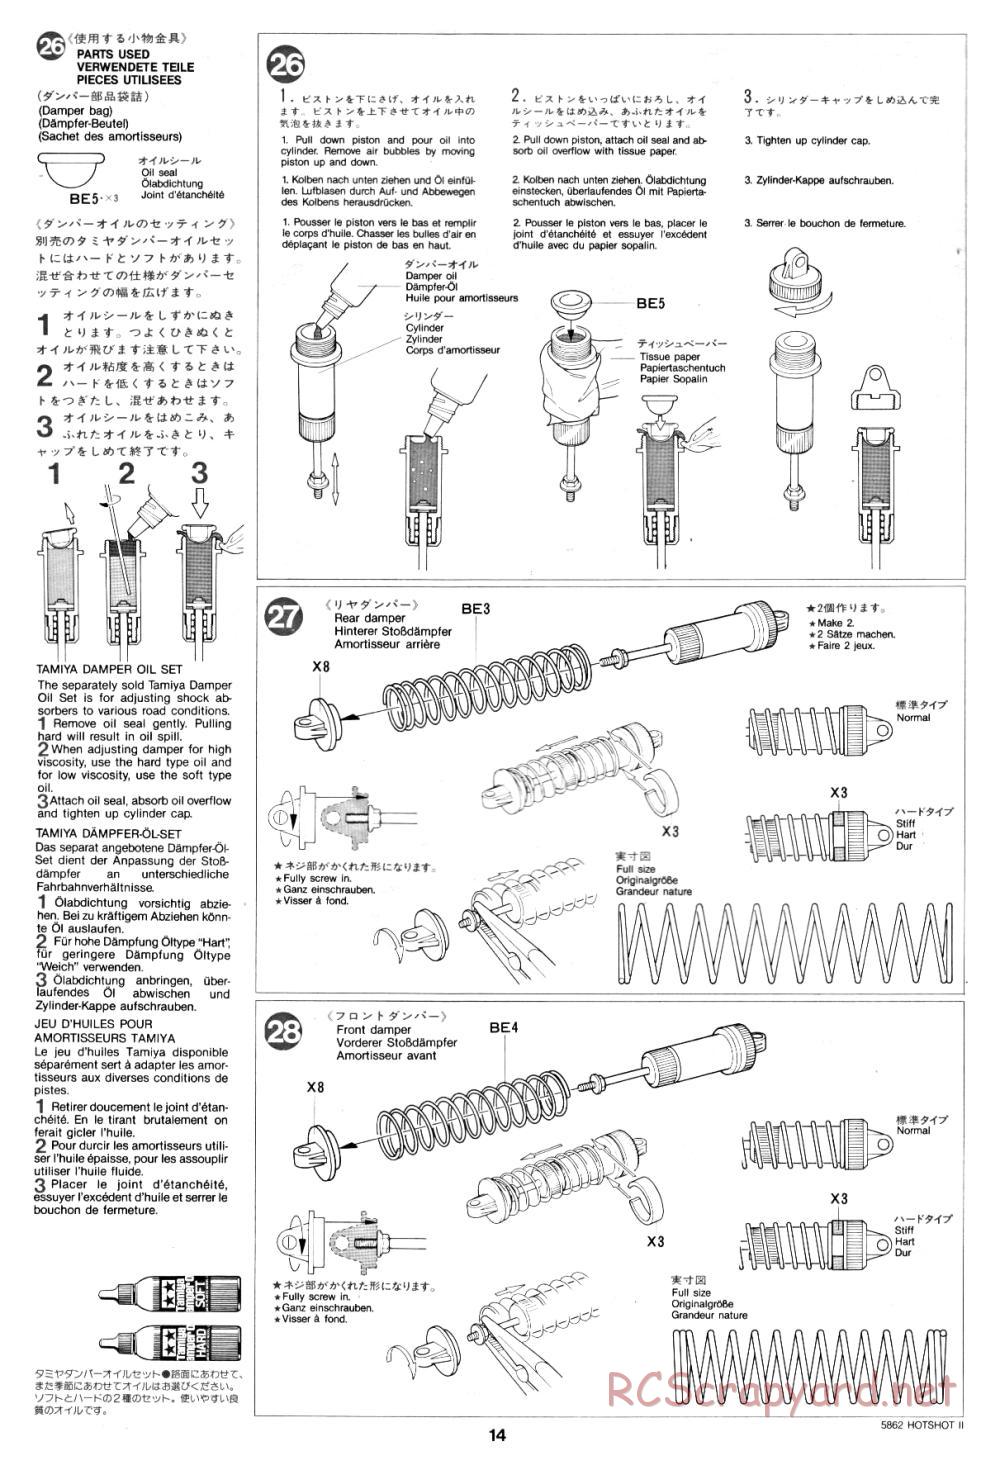 Tamiya - Hot-Shot II - 58062 - Manual - Page 14